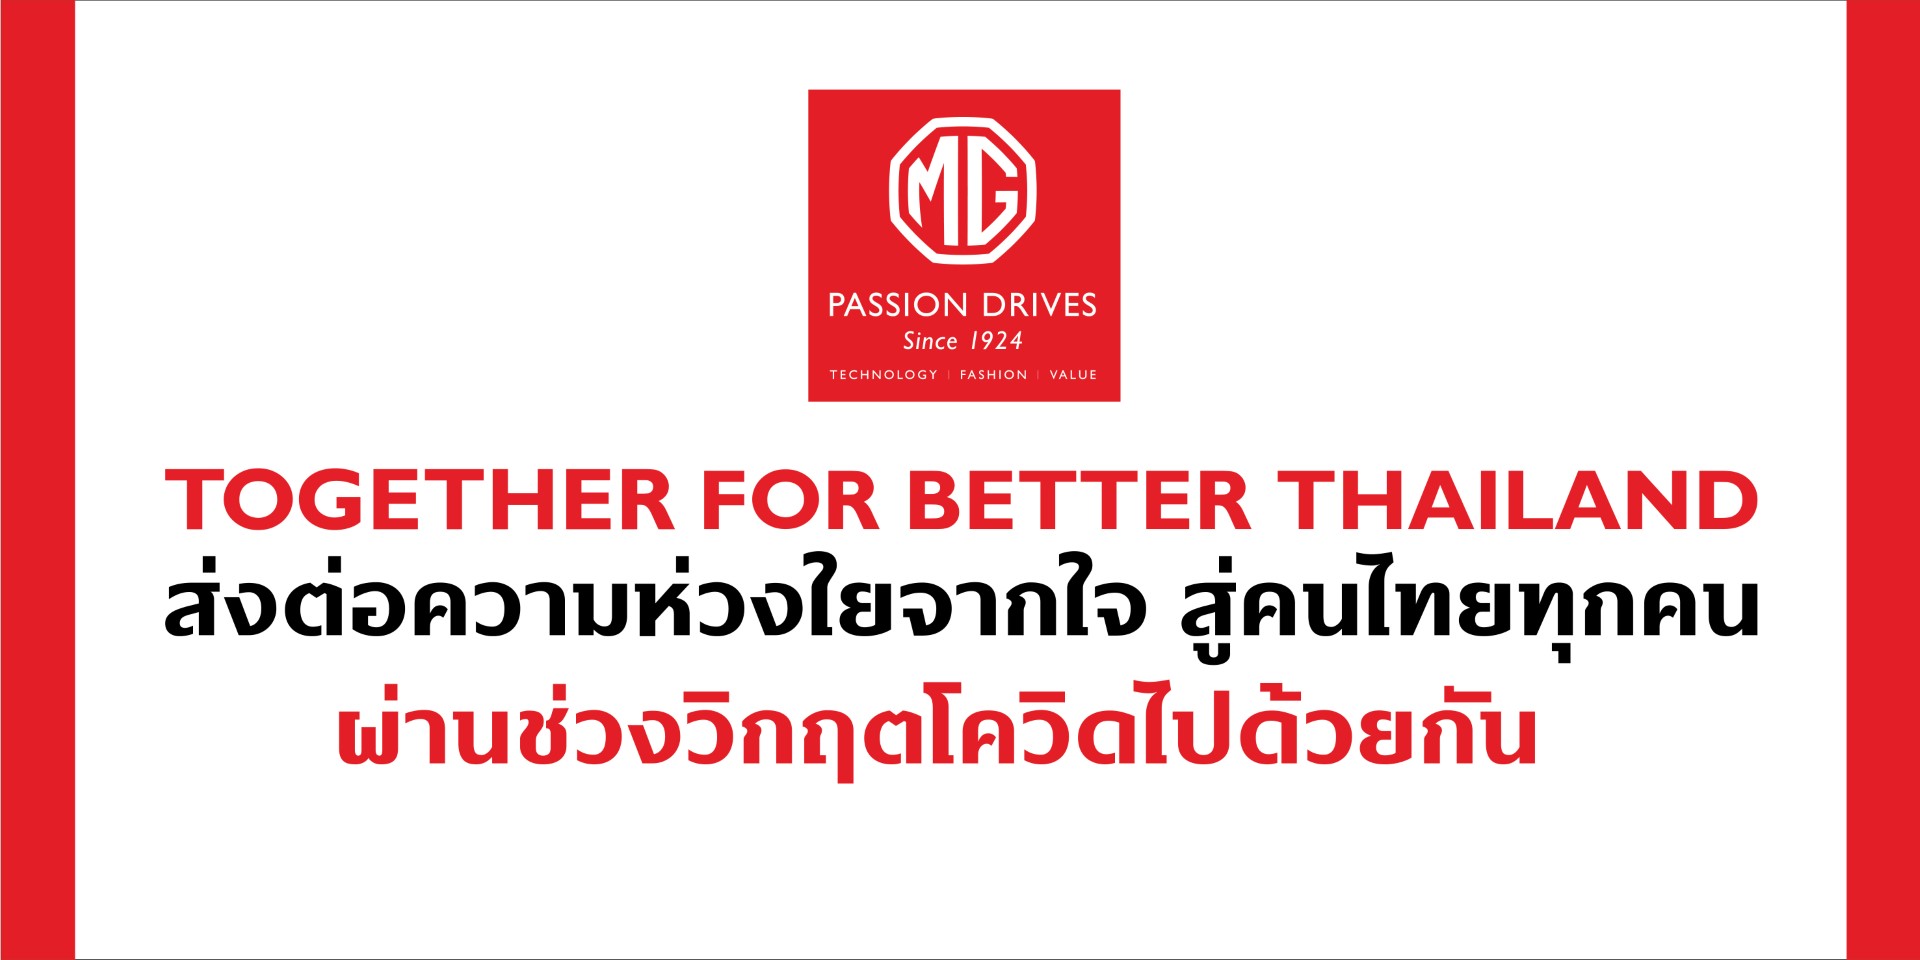 MG จับมือภาครัฐและเอกชนร่วมช่วยเหลือคนไทยผ่านวิกฤตโควิดไปด้วยกัน #TogetherForBetterThailand